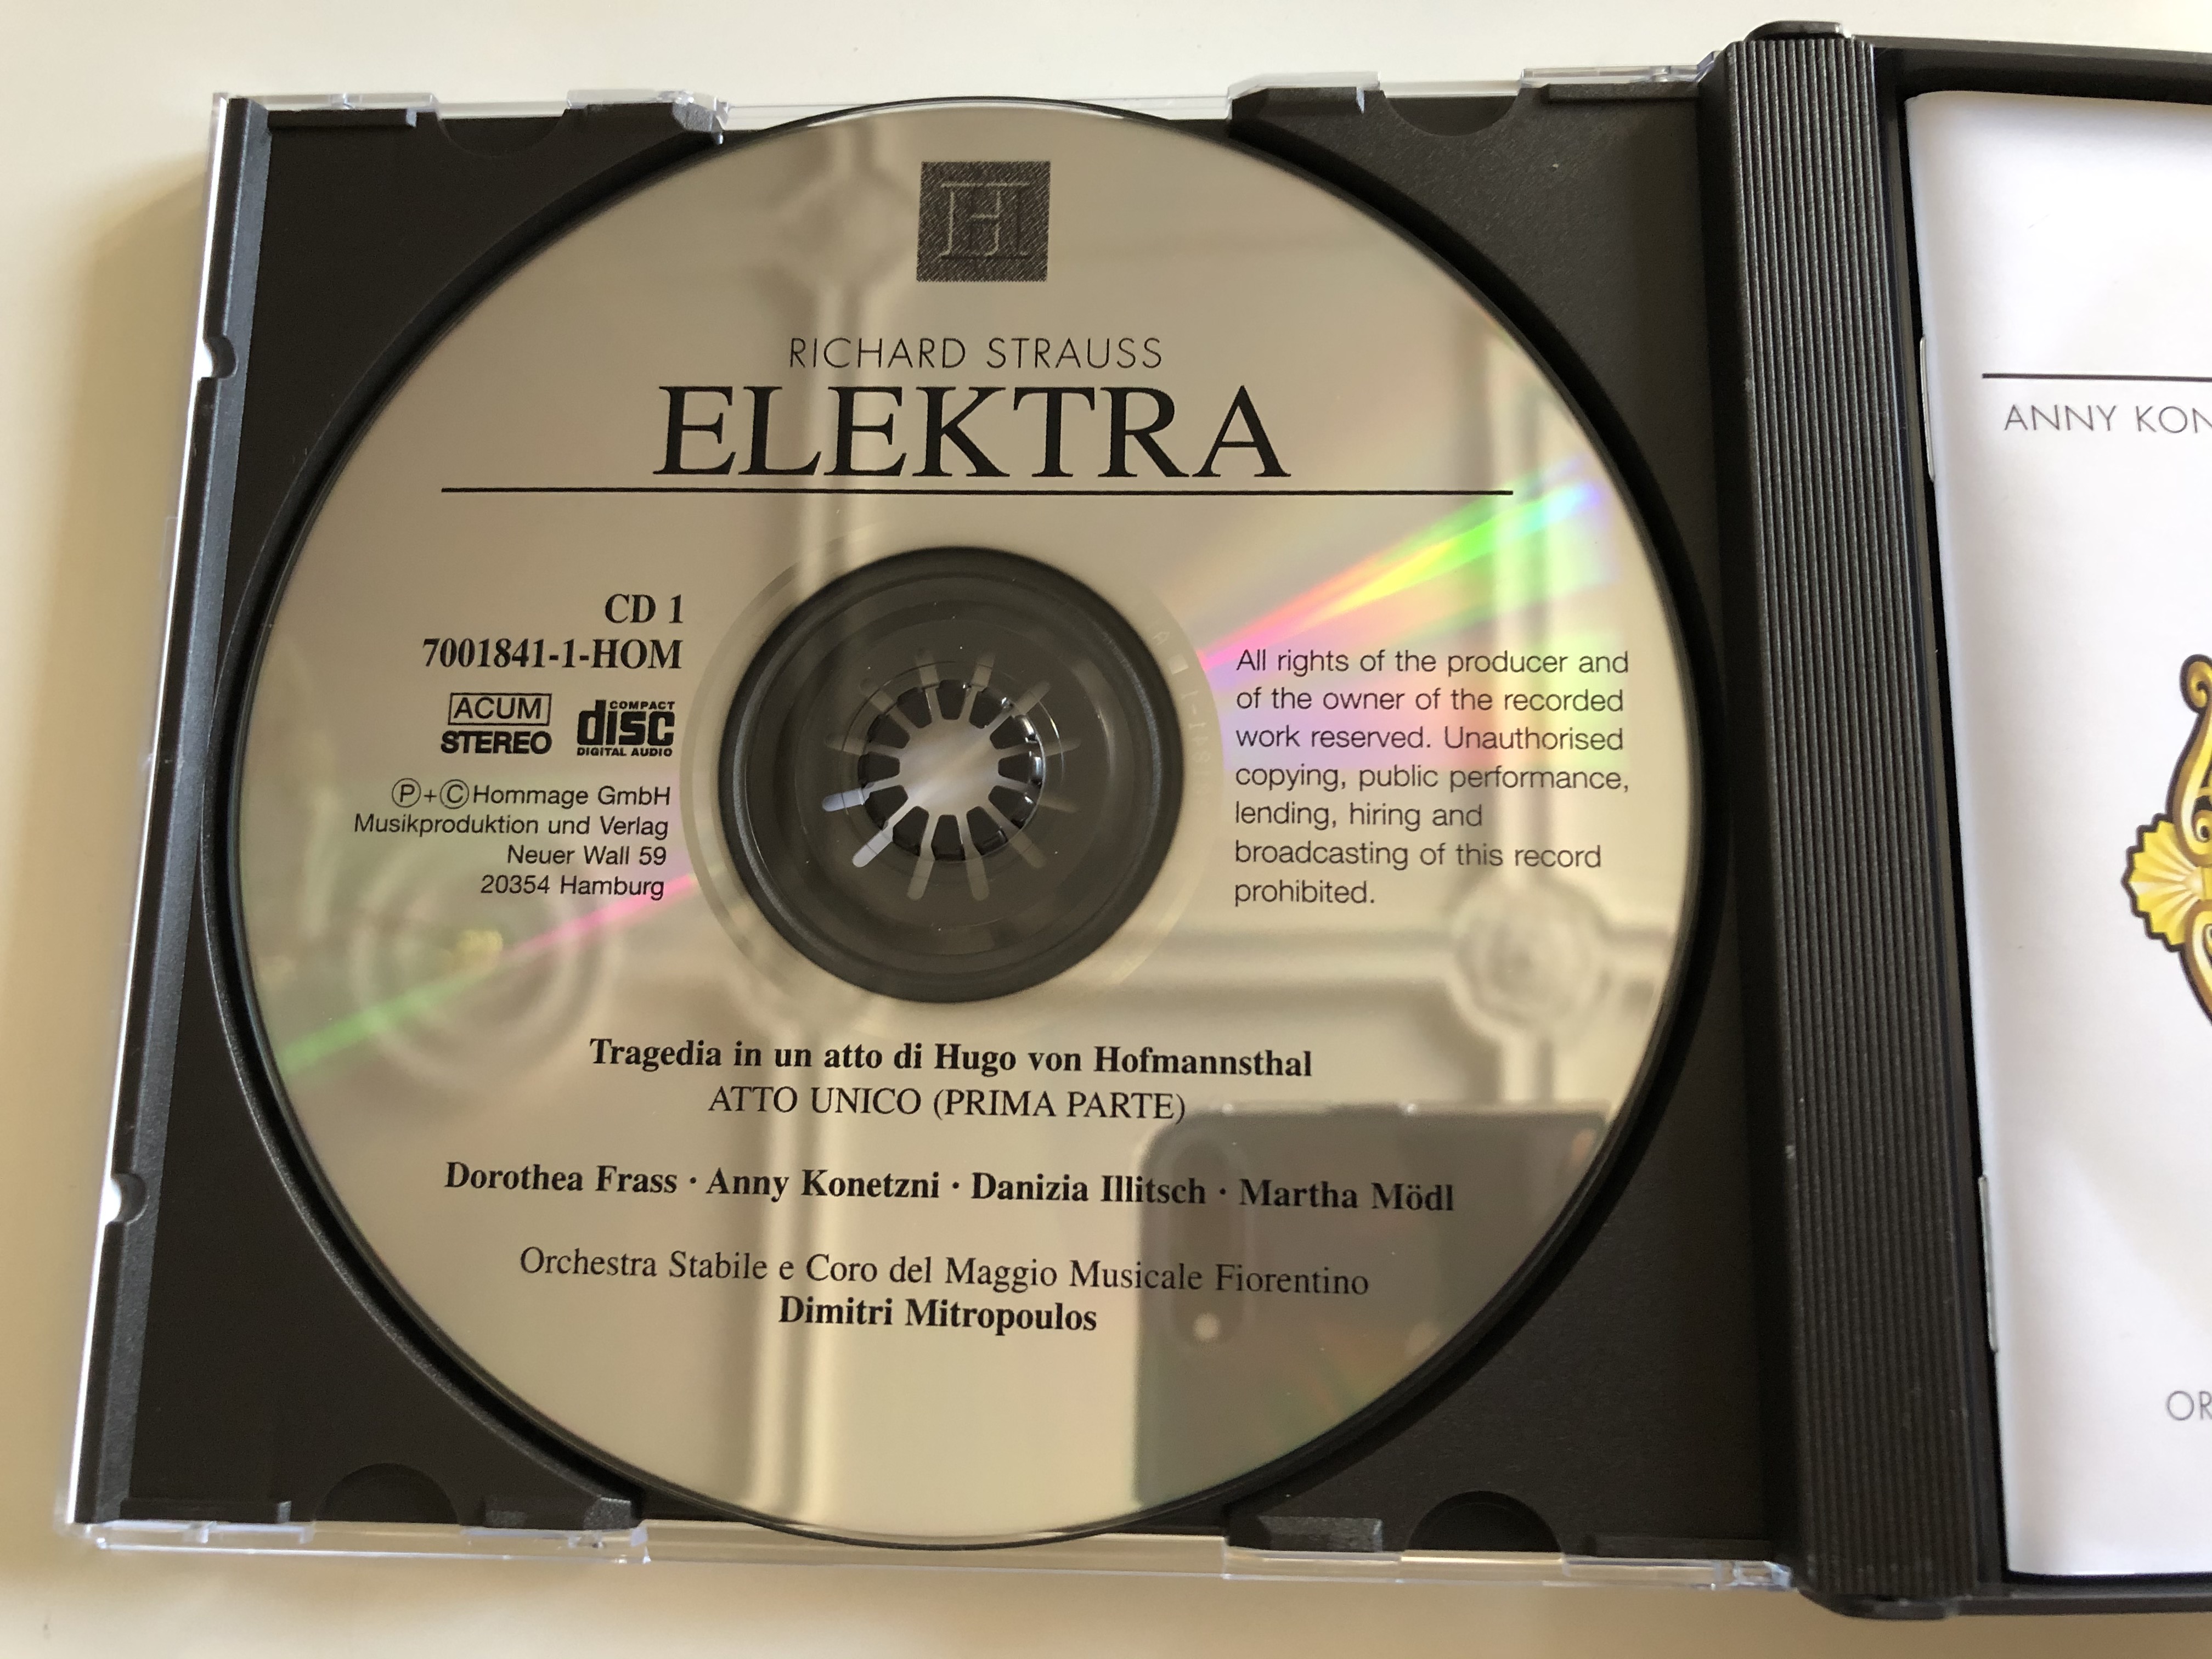 richard-strauss-elektra-anny-konetzni-martha-modl-daniza-ilitsch-hans-braun-orchestra-stabile-e-coro-del-maggio-musicale-fiorentino-dimitri-mitropoulos-hommage-2x-audio-cd-2000-stereo-5-.jpg